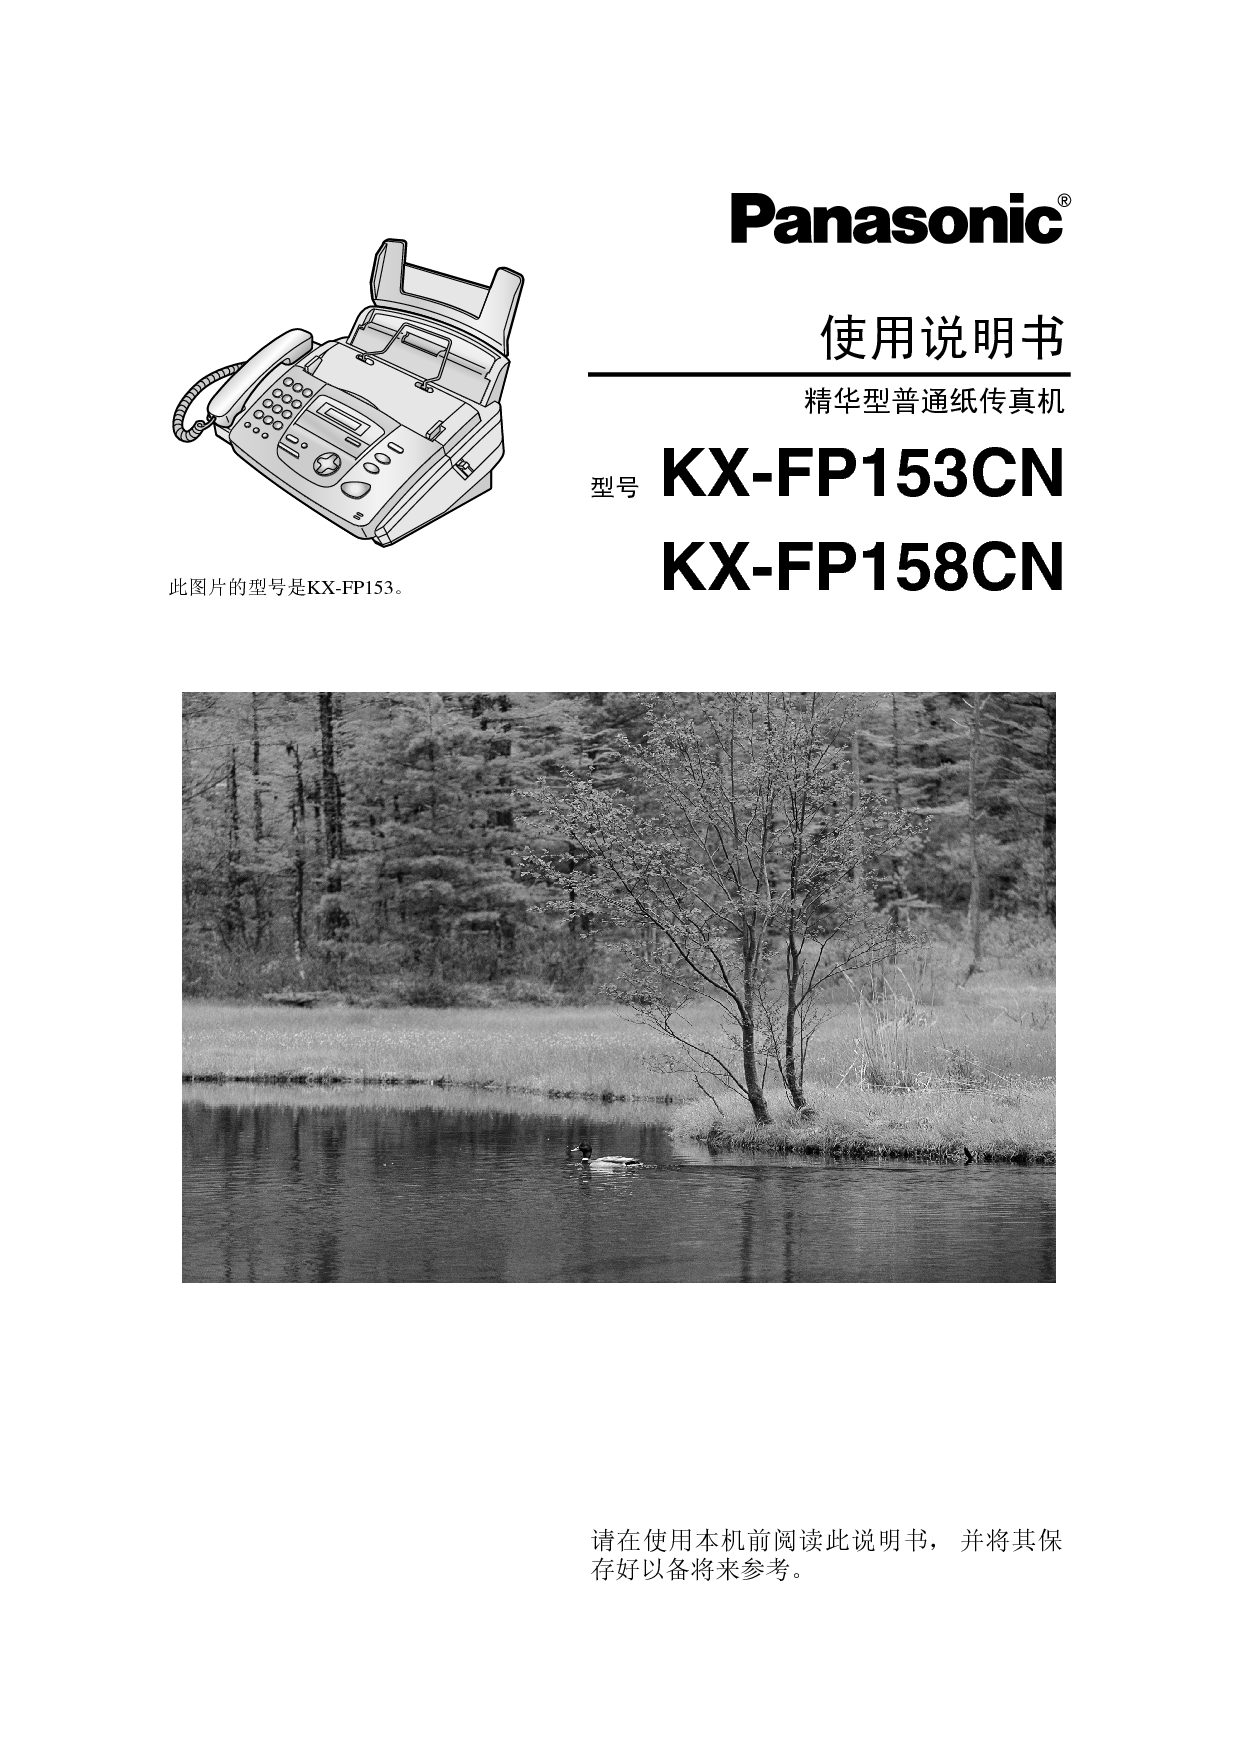 松下 Panasonic KX-FP153CN 说明书 封面